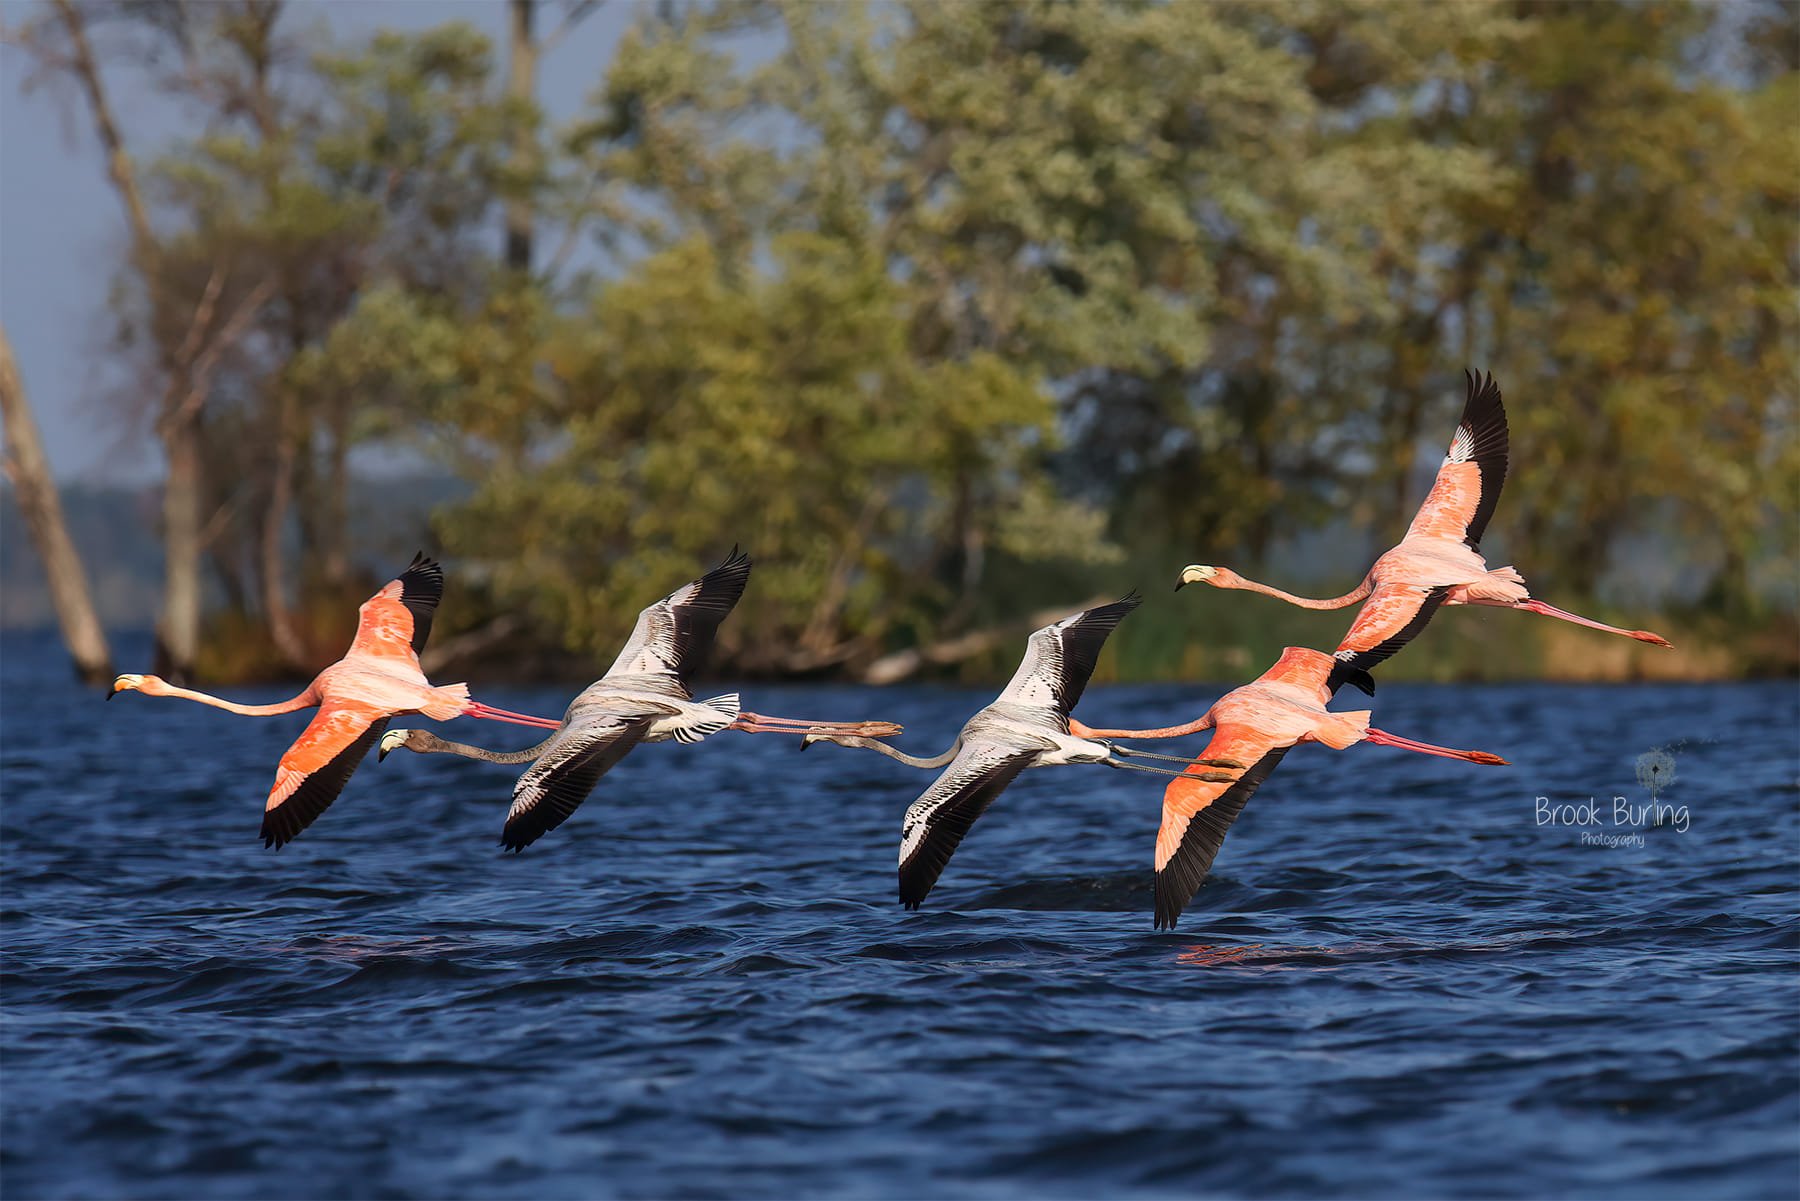 The Flamingos Take Flight